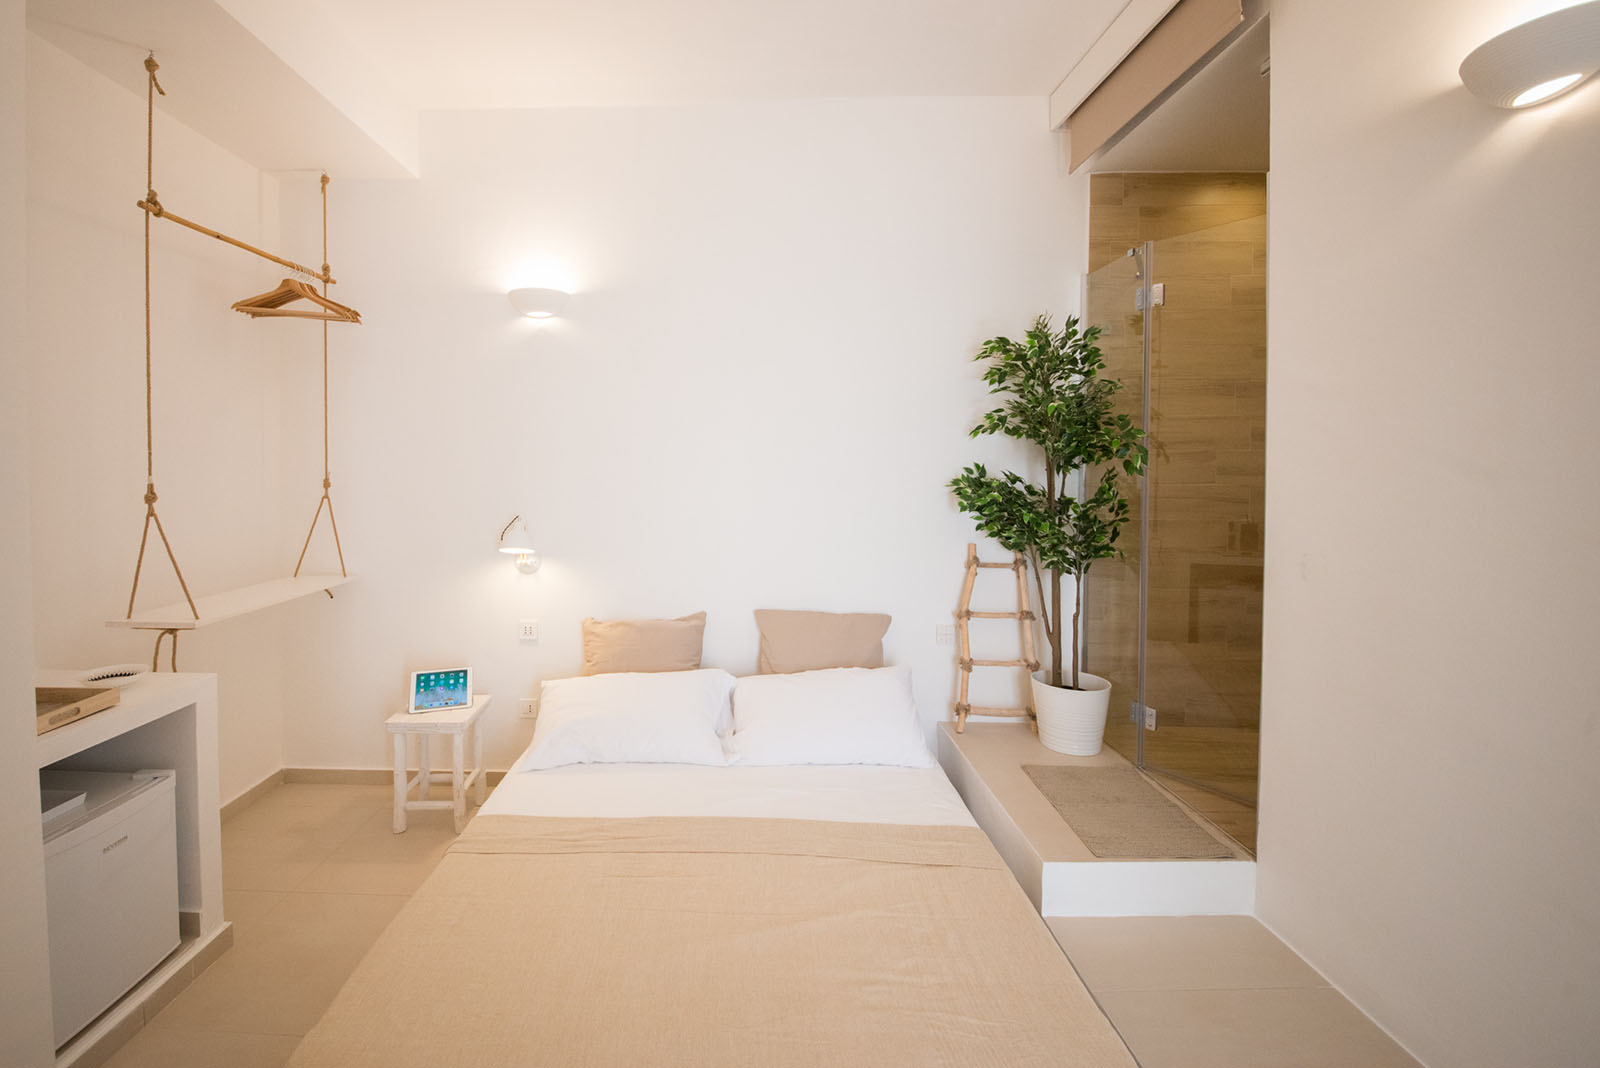 1 bed and breakfast agropoli progettazione architettonica domotica salerno break for two mare nest room 5 b&b